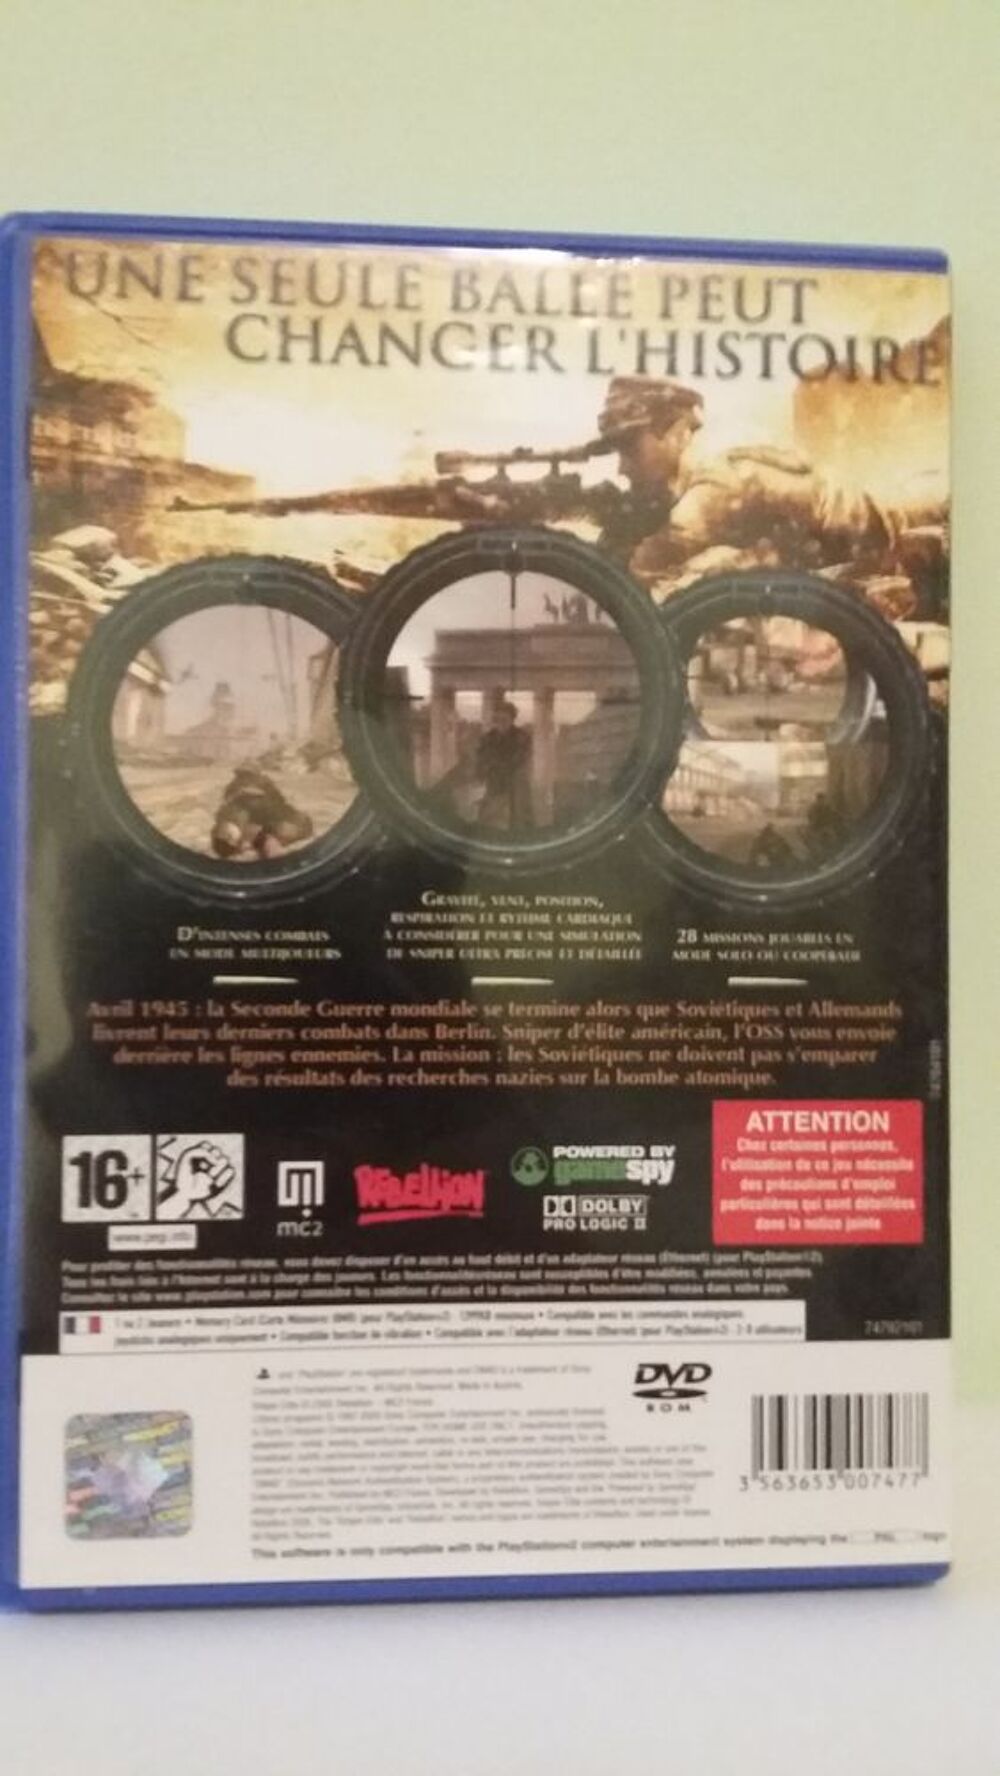 Jeu PlayStation 2 : Sniper Elite Consoles et jeux vidos